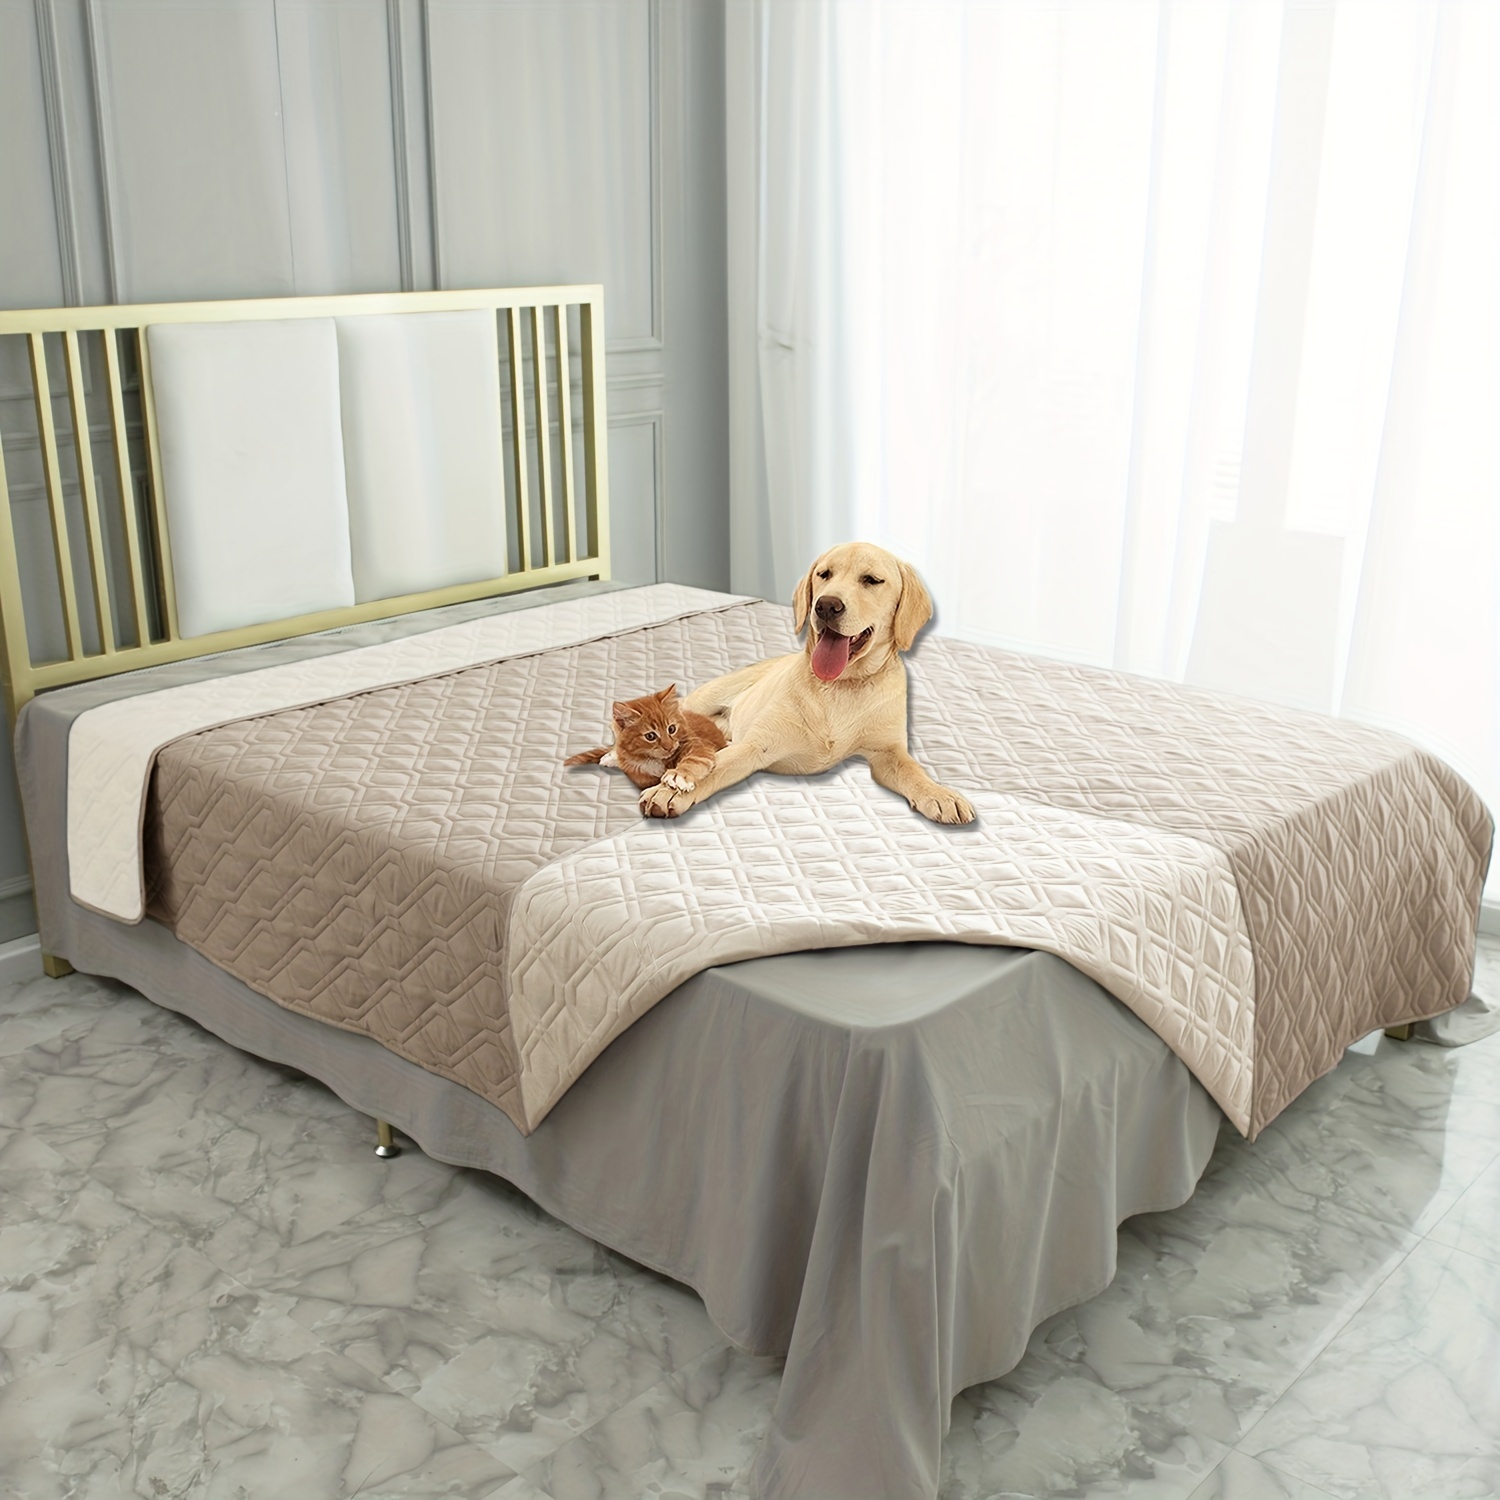 PETMAKER - Manta impermeable y reversible para mascotas, protege el sofá,  el automóvil y la cama de derrames, manchas o pelos, para perros y gatos  (60